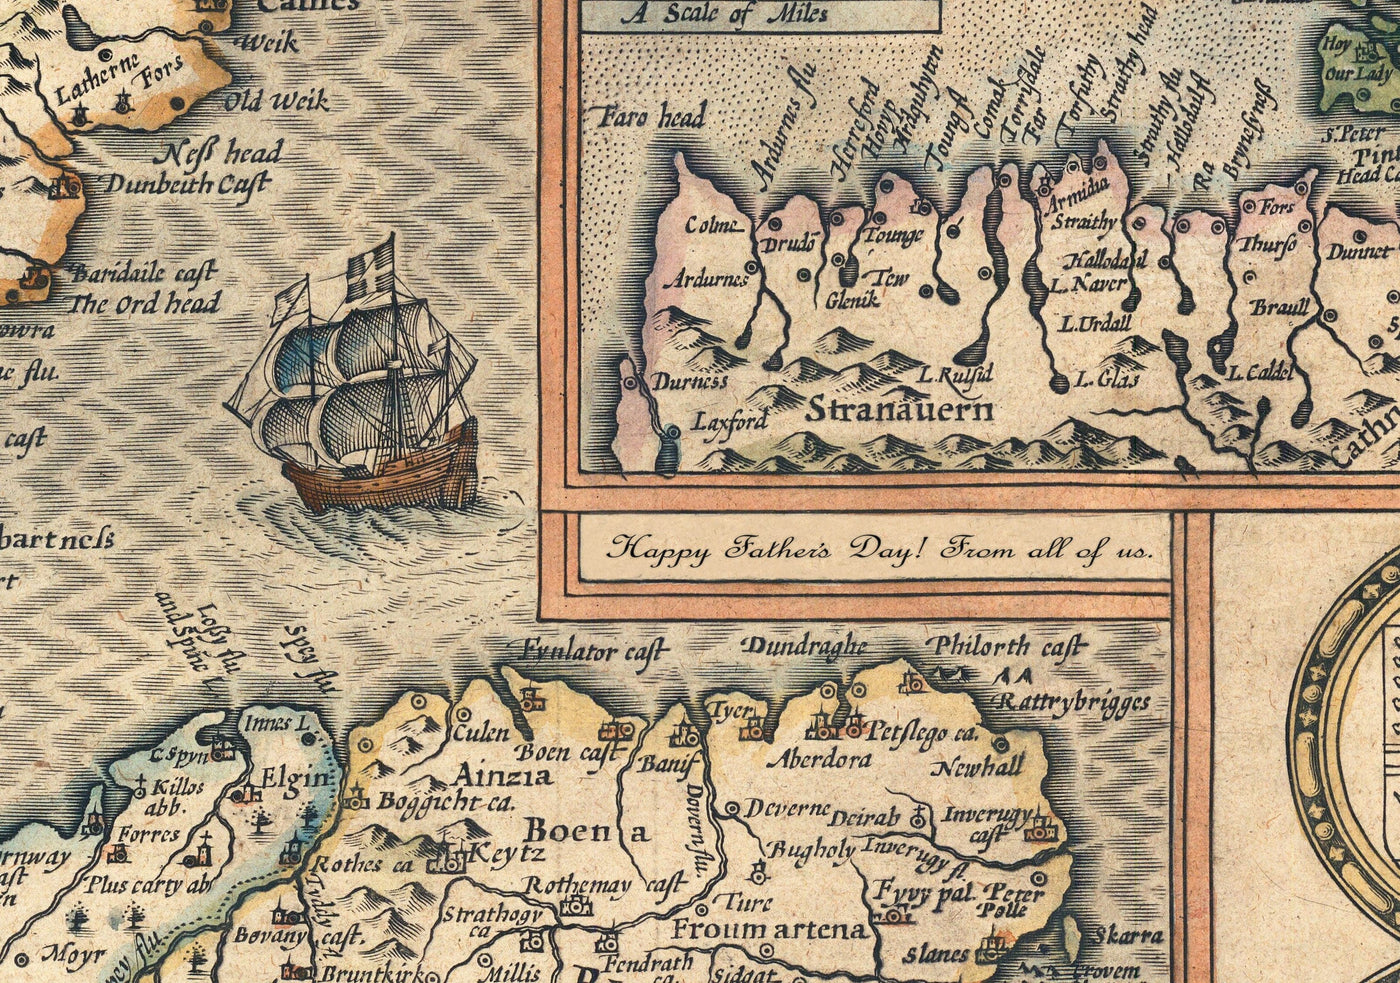 Vieille carte Maincolourrée de l'Italie, 1627 par John Speed ​​- Corse, Sardaigne, Sicile, Venise, Rome, Le pape